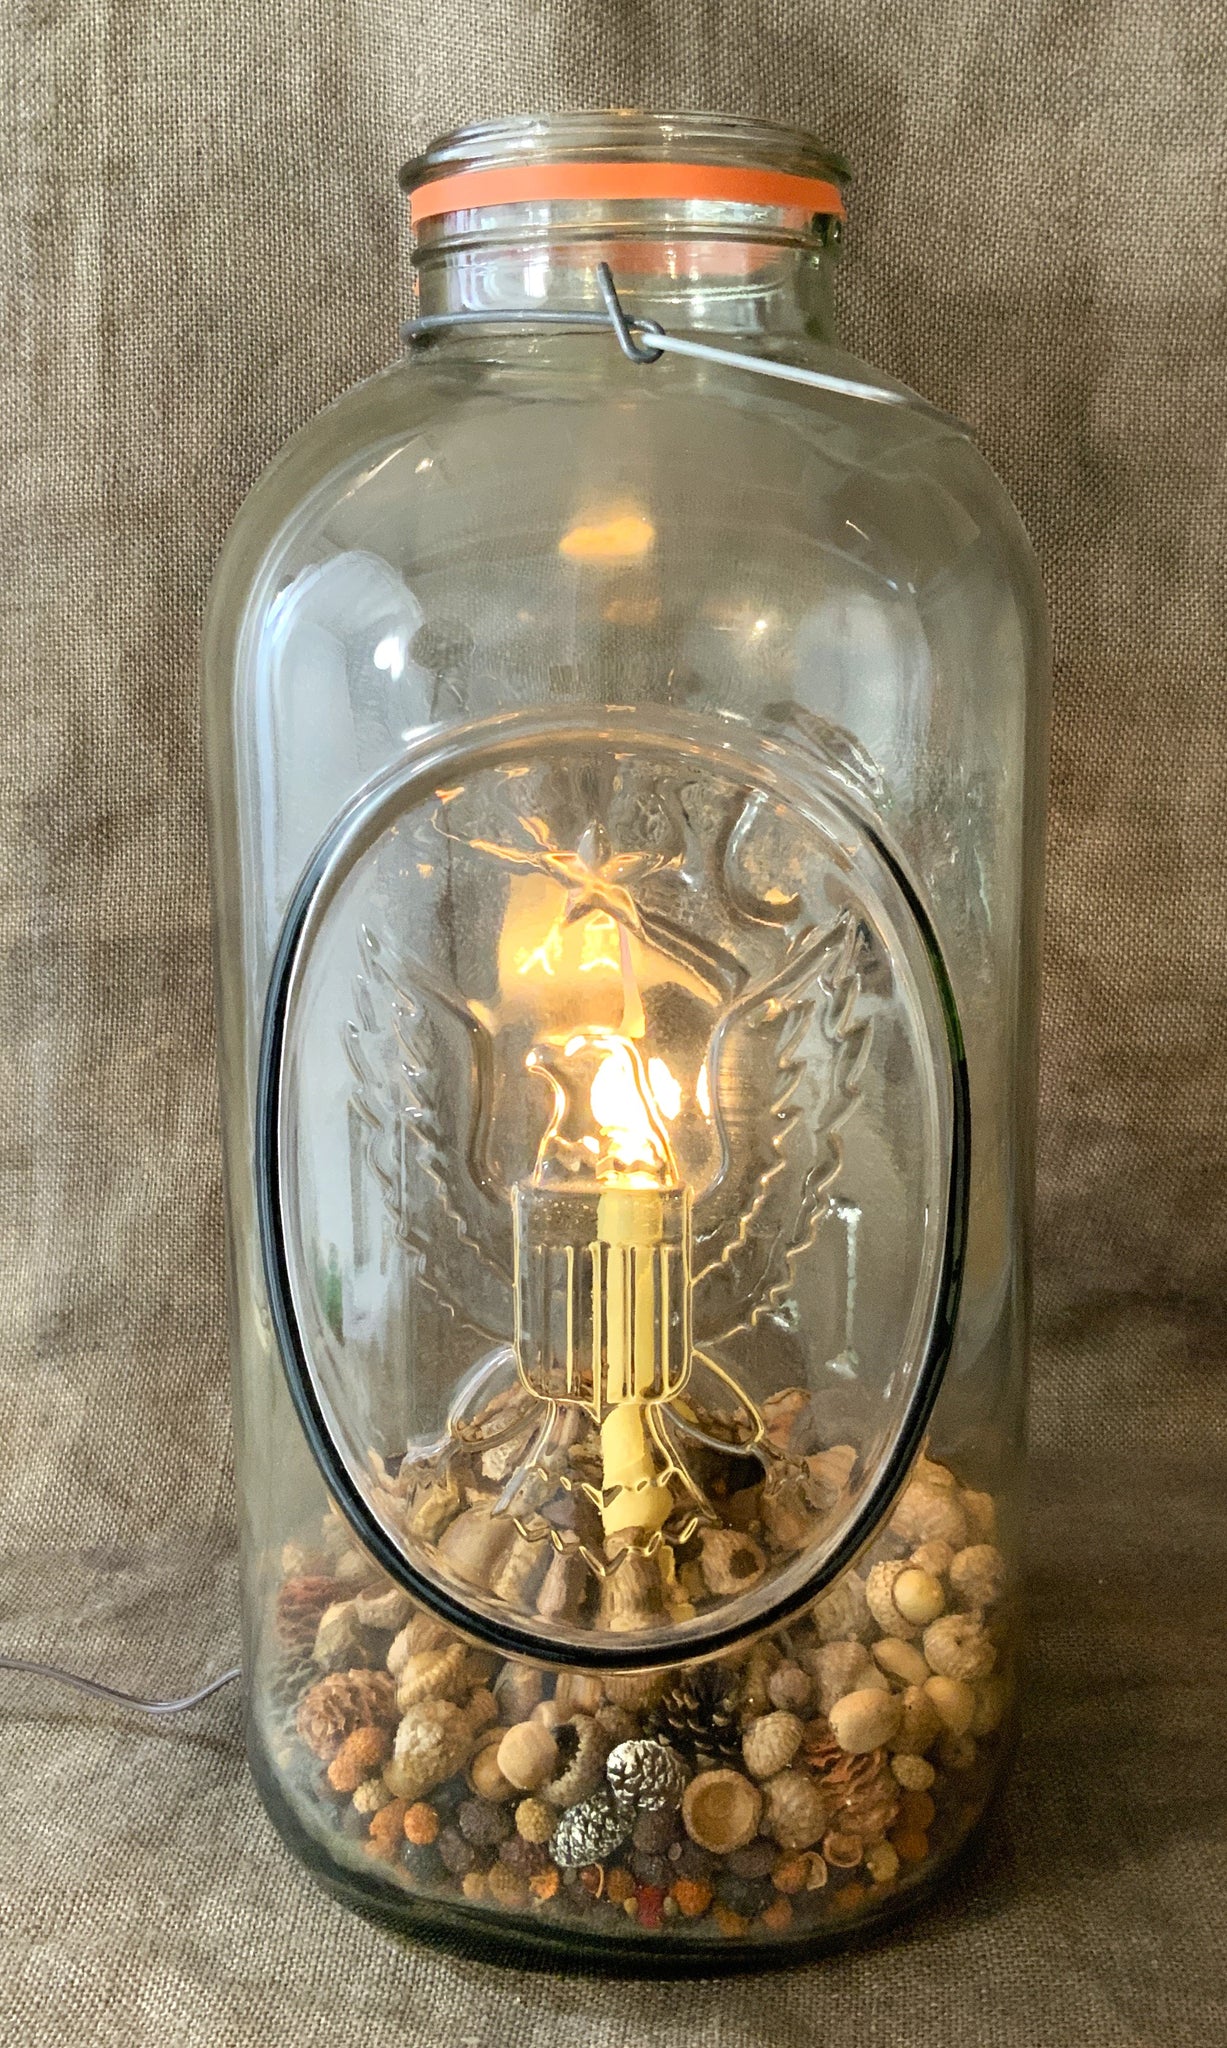 Extra Large Mason Jar Candle Lamp – shop.goboardoftrade